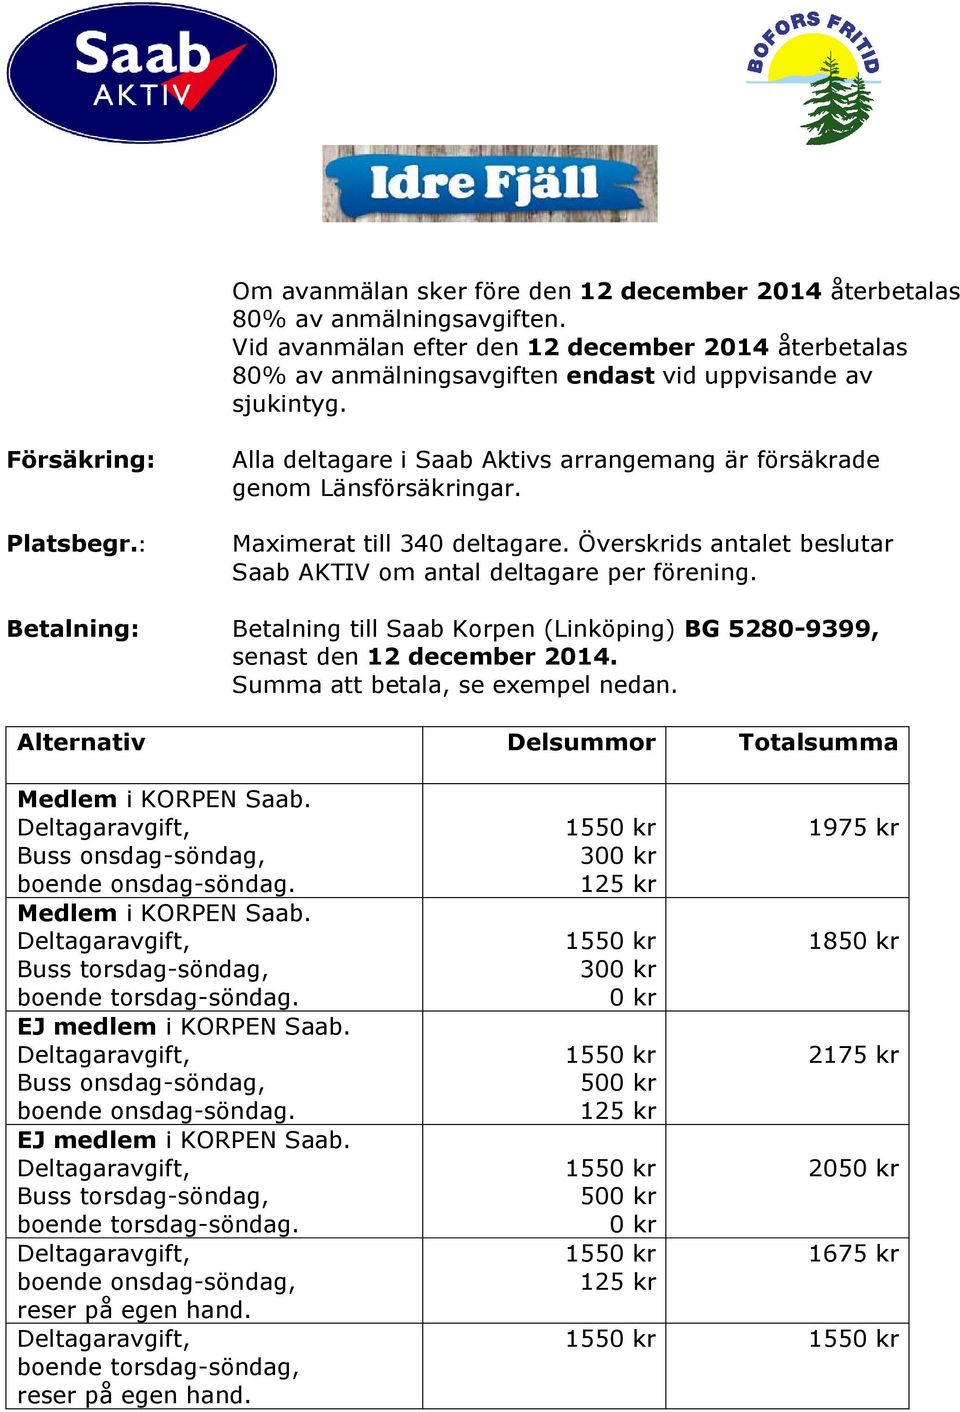 Överskrids antalet beslutar Saab AKTIV om antal deltagare per förening. Betalning: Betalning till Saab Korpen (Linköping) BG 5280-9399, senast den 12 december 2014. Summa att betala, se exempel nedan.